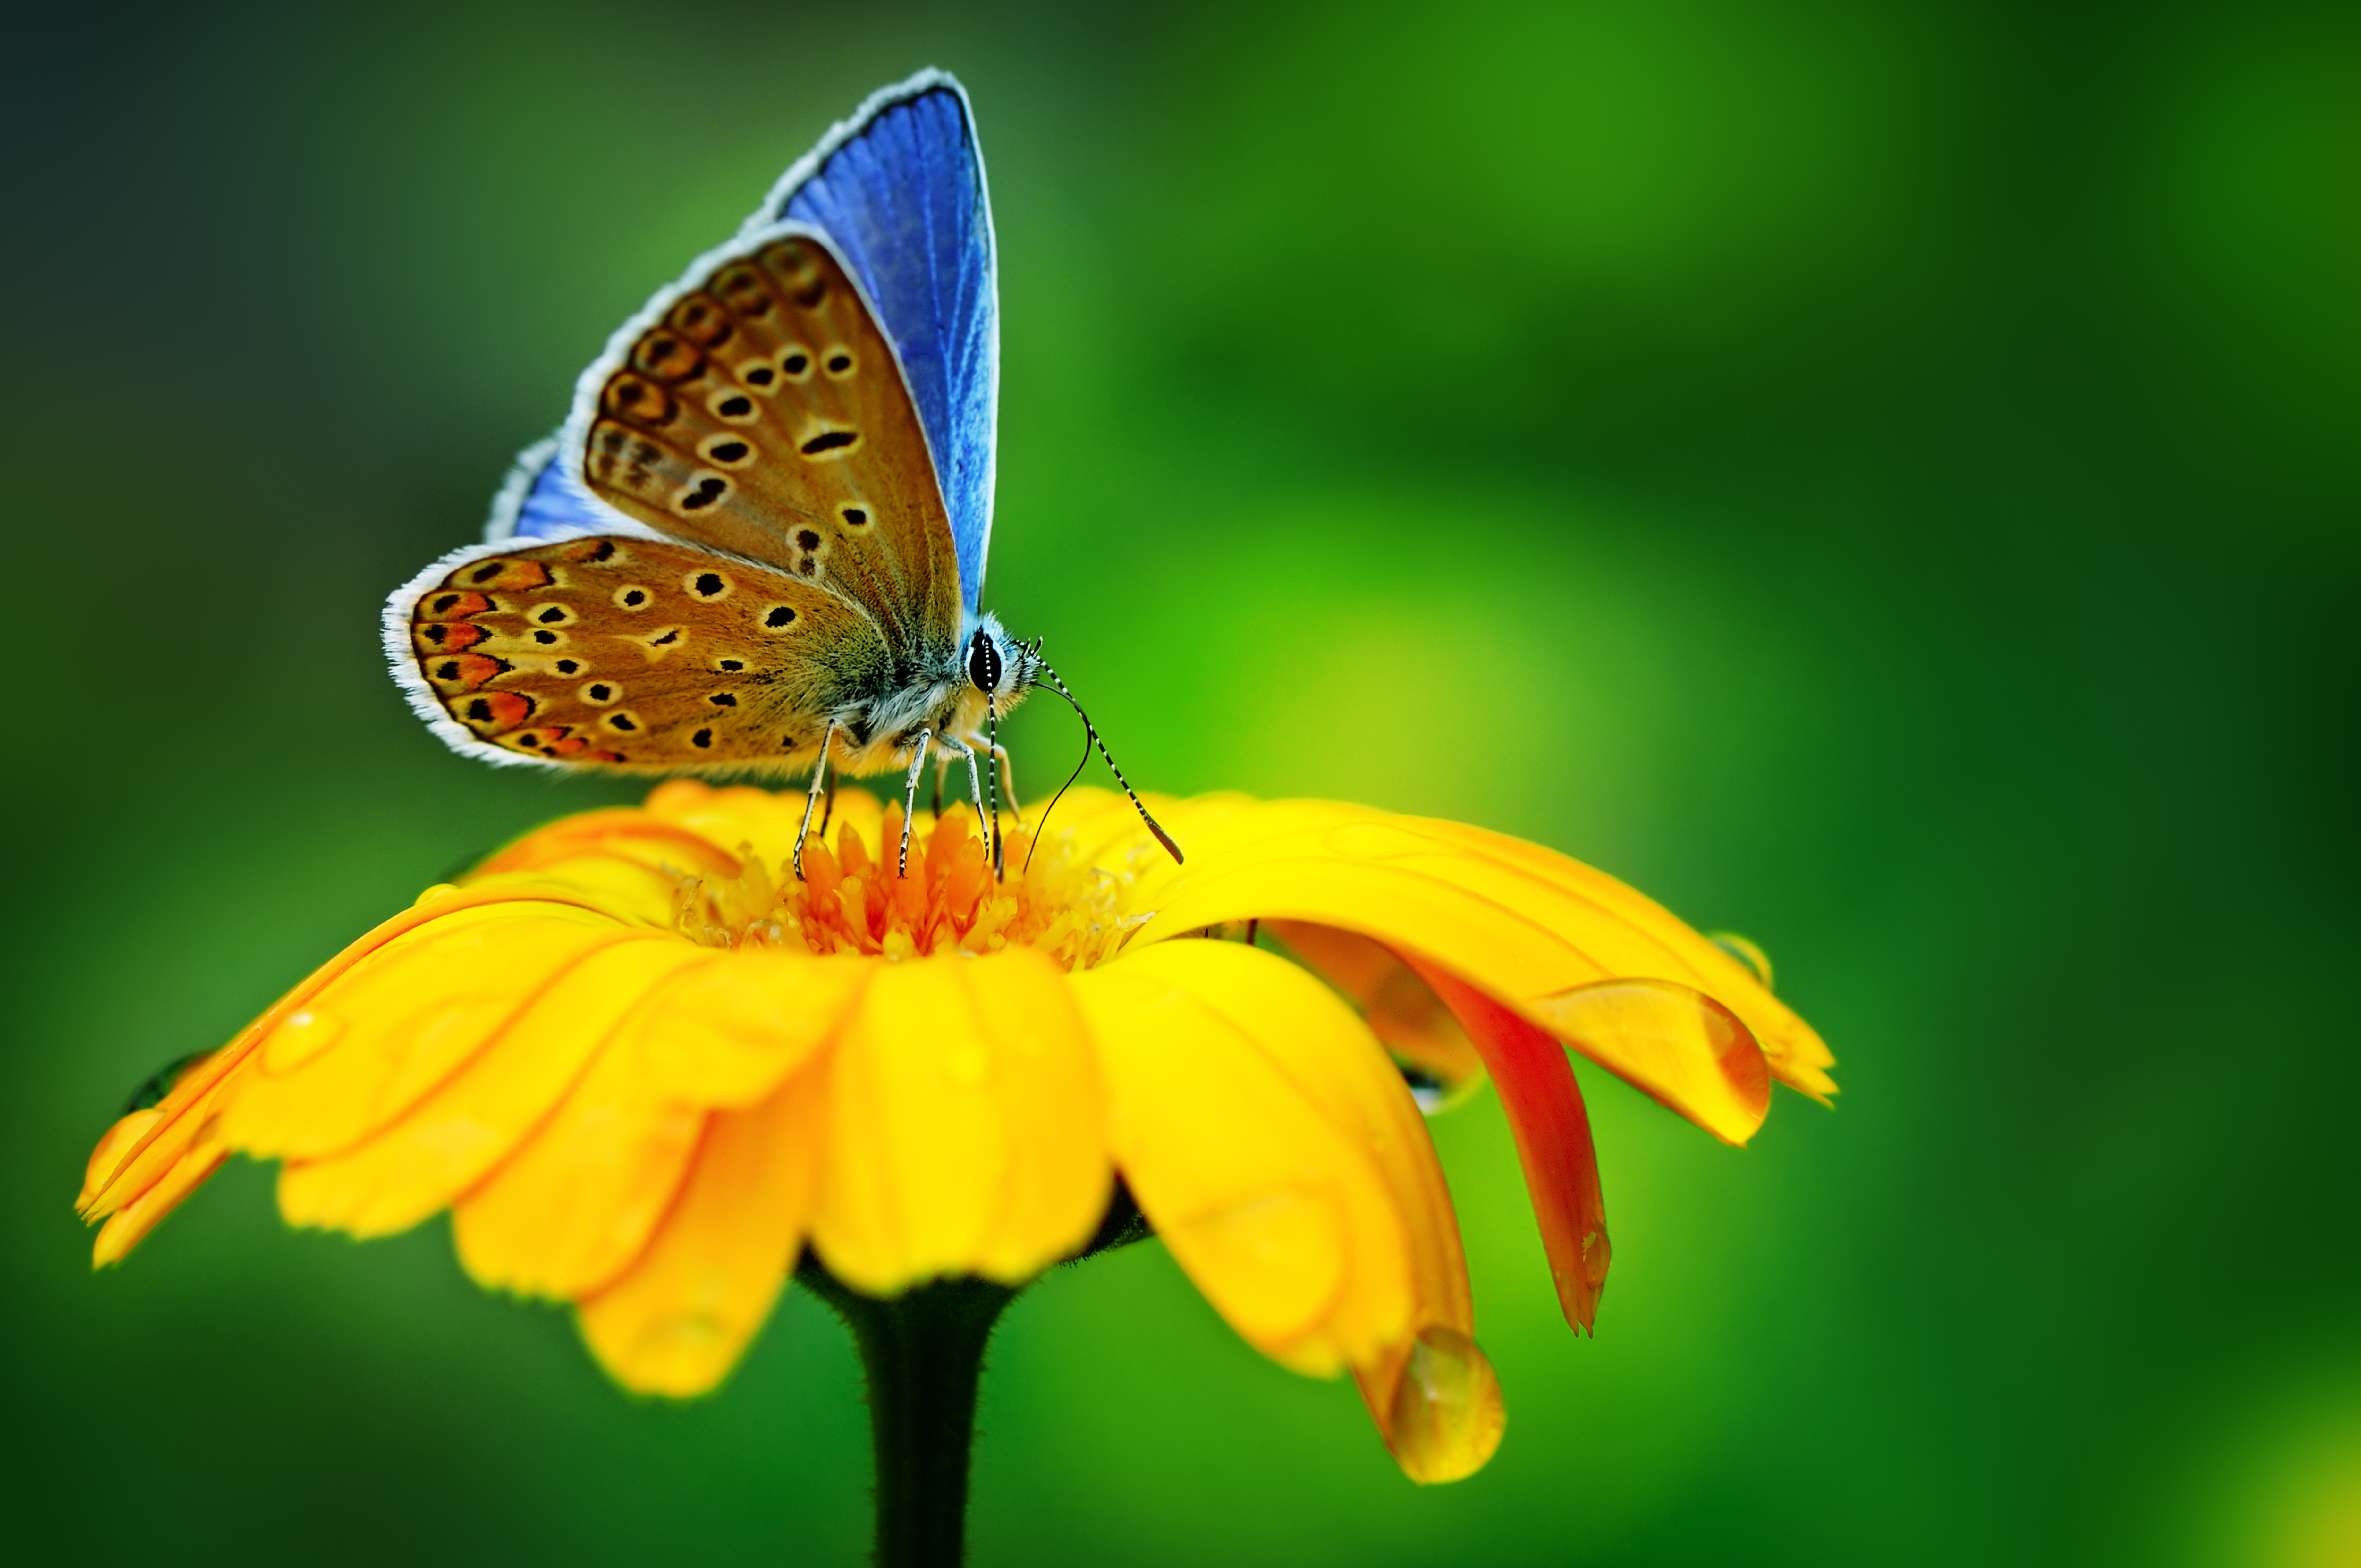 Descarga gratuita de fondo de pantalla para móvil de Animales, Flor, Insecto, Mariposa, Flor Amarilla, Macrofotografía.